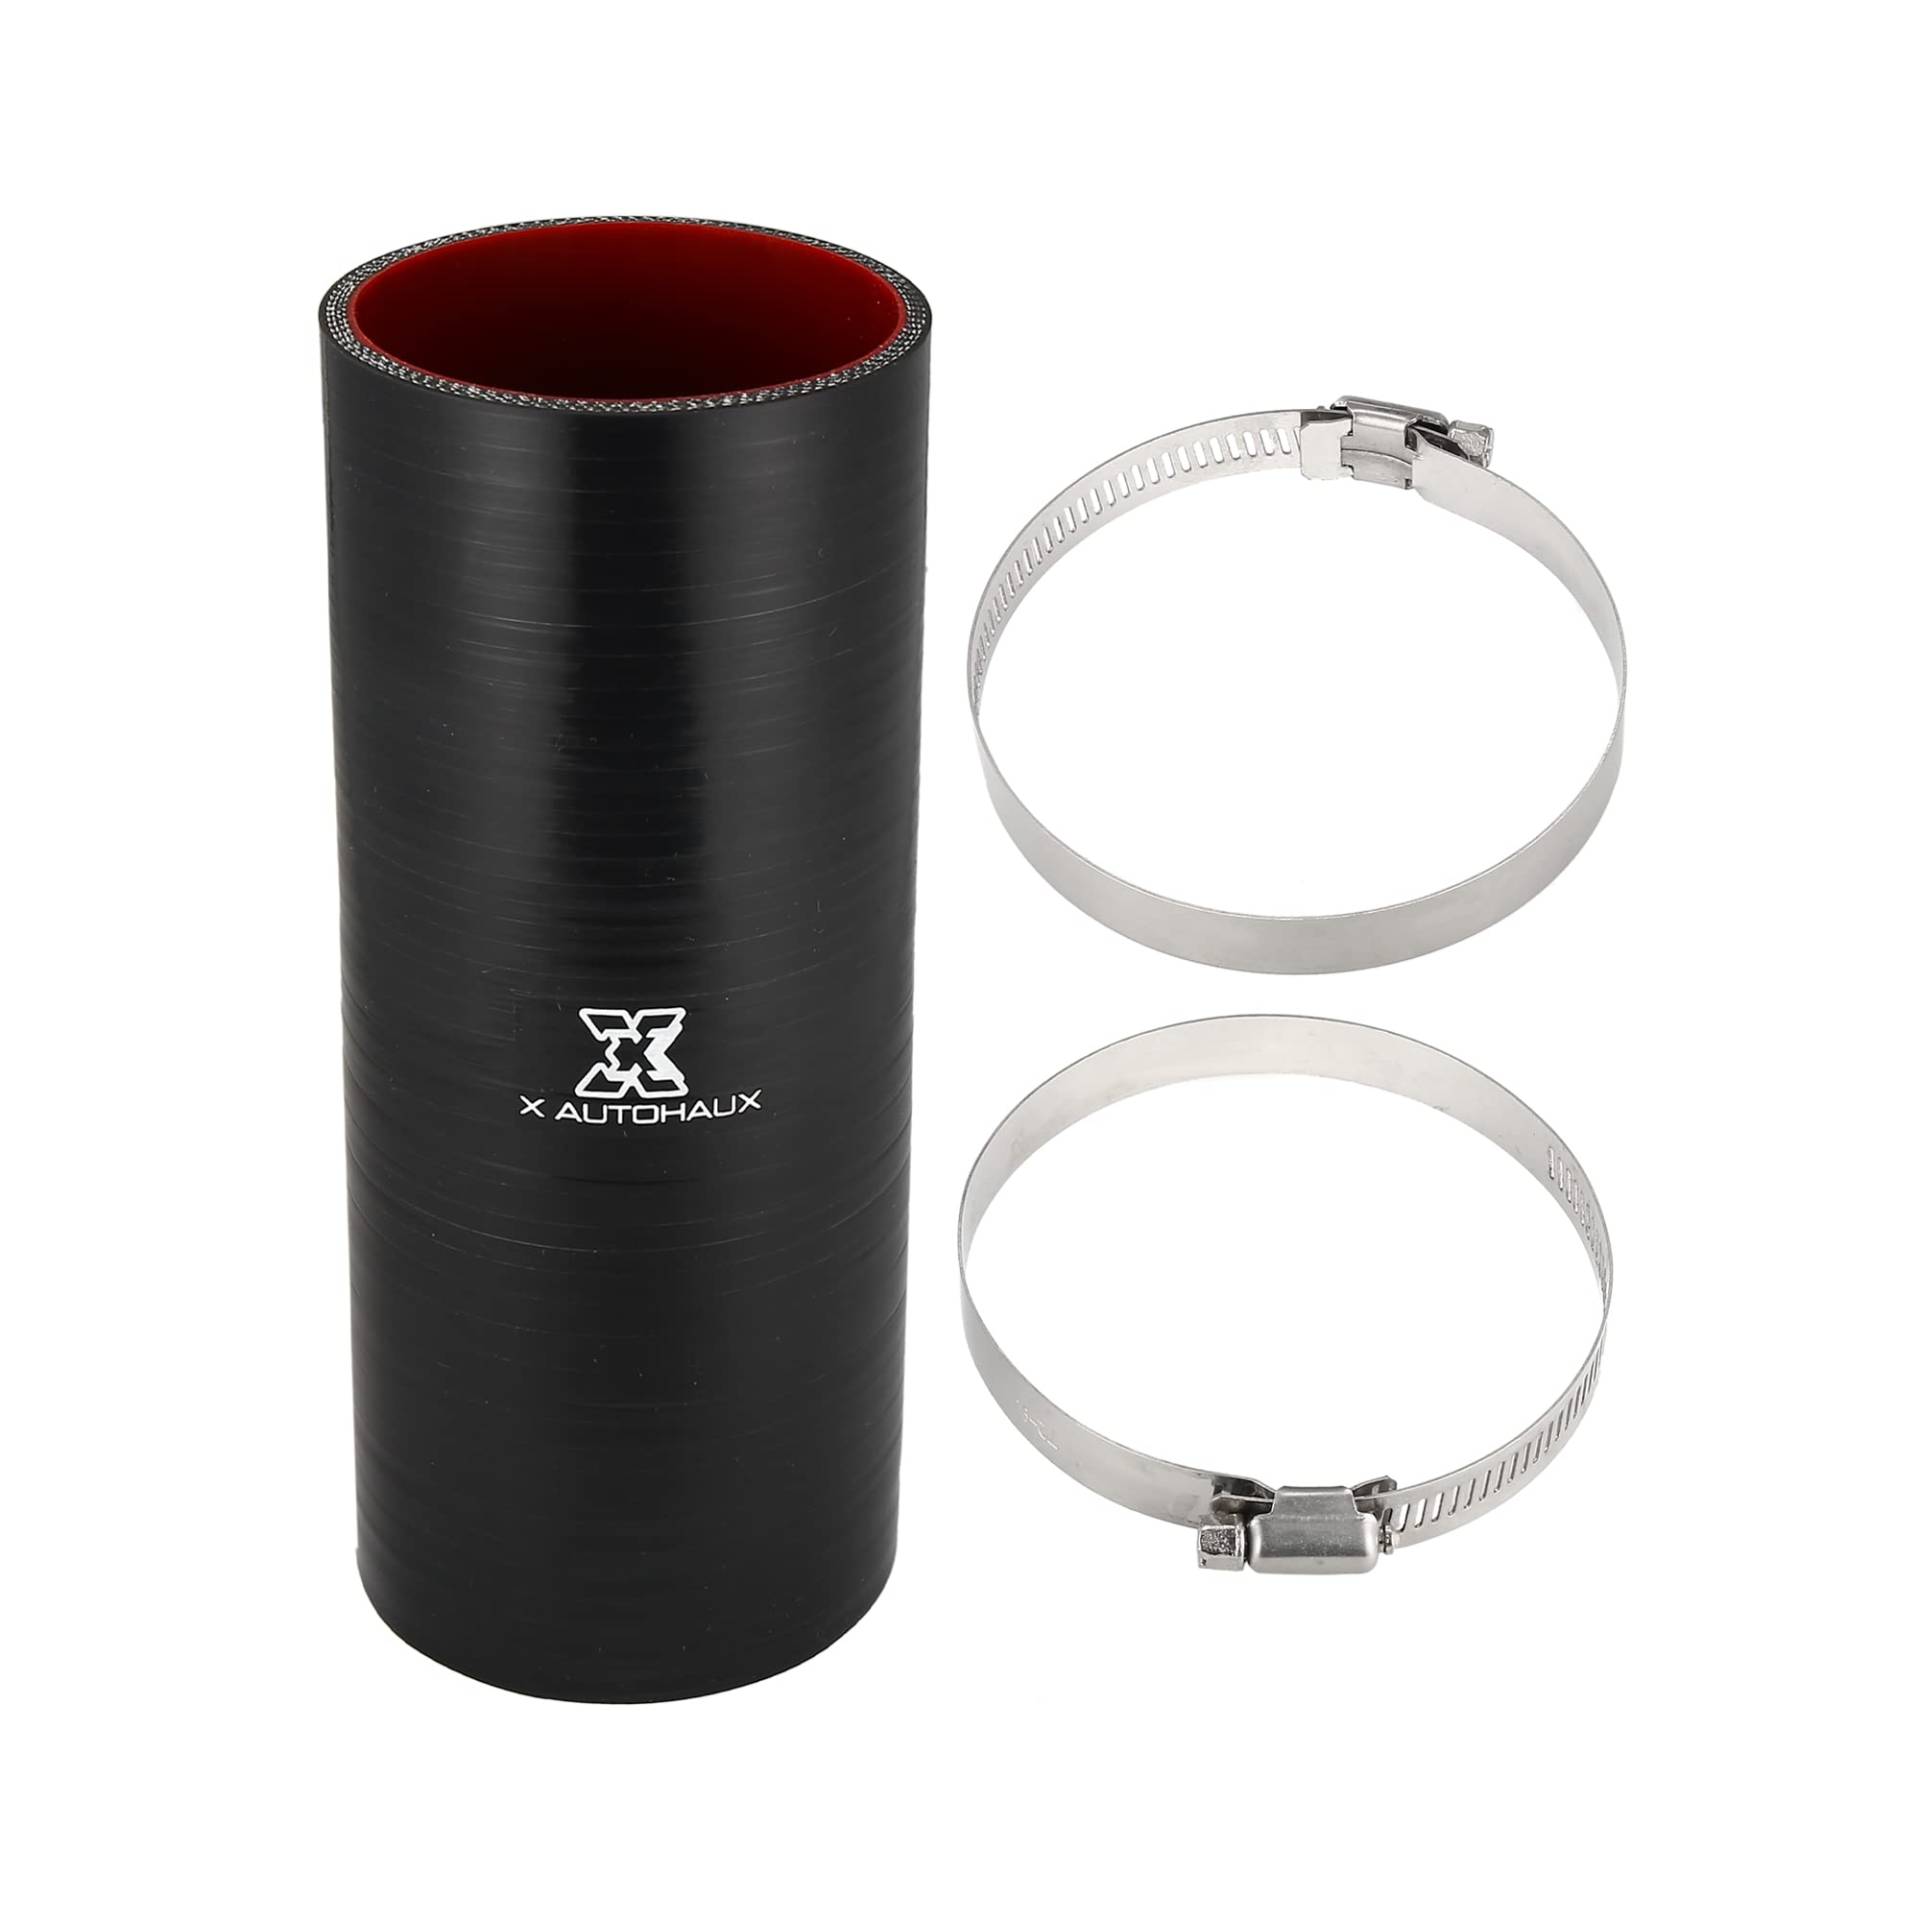 X AUTOHAUX Silikonschlauch mit Klemmen, 76 mm, Schwarz / Rot von X AUTOHAUX